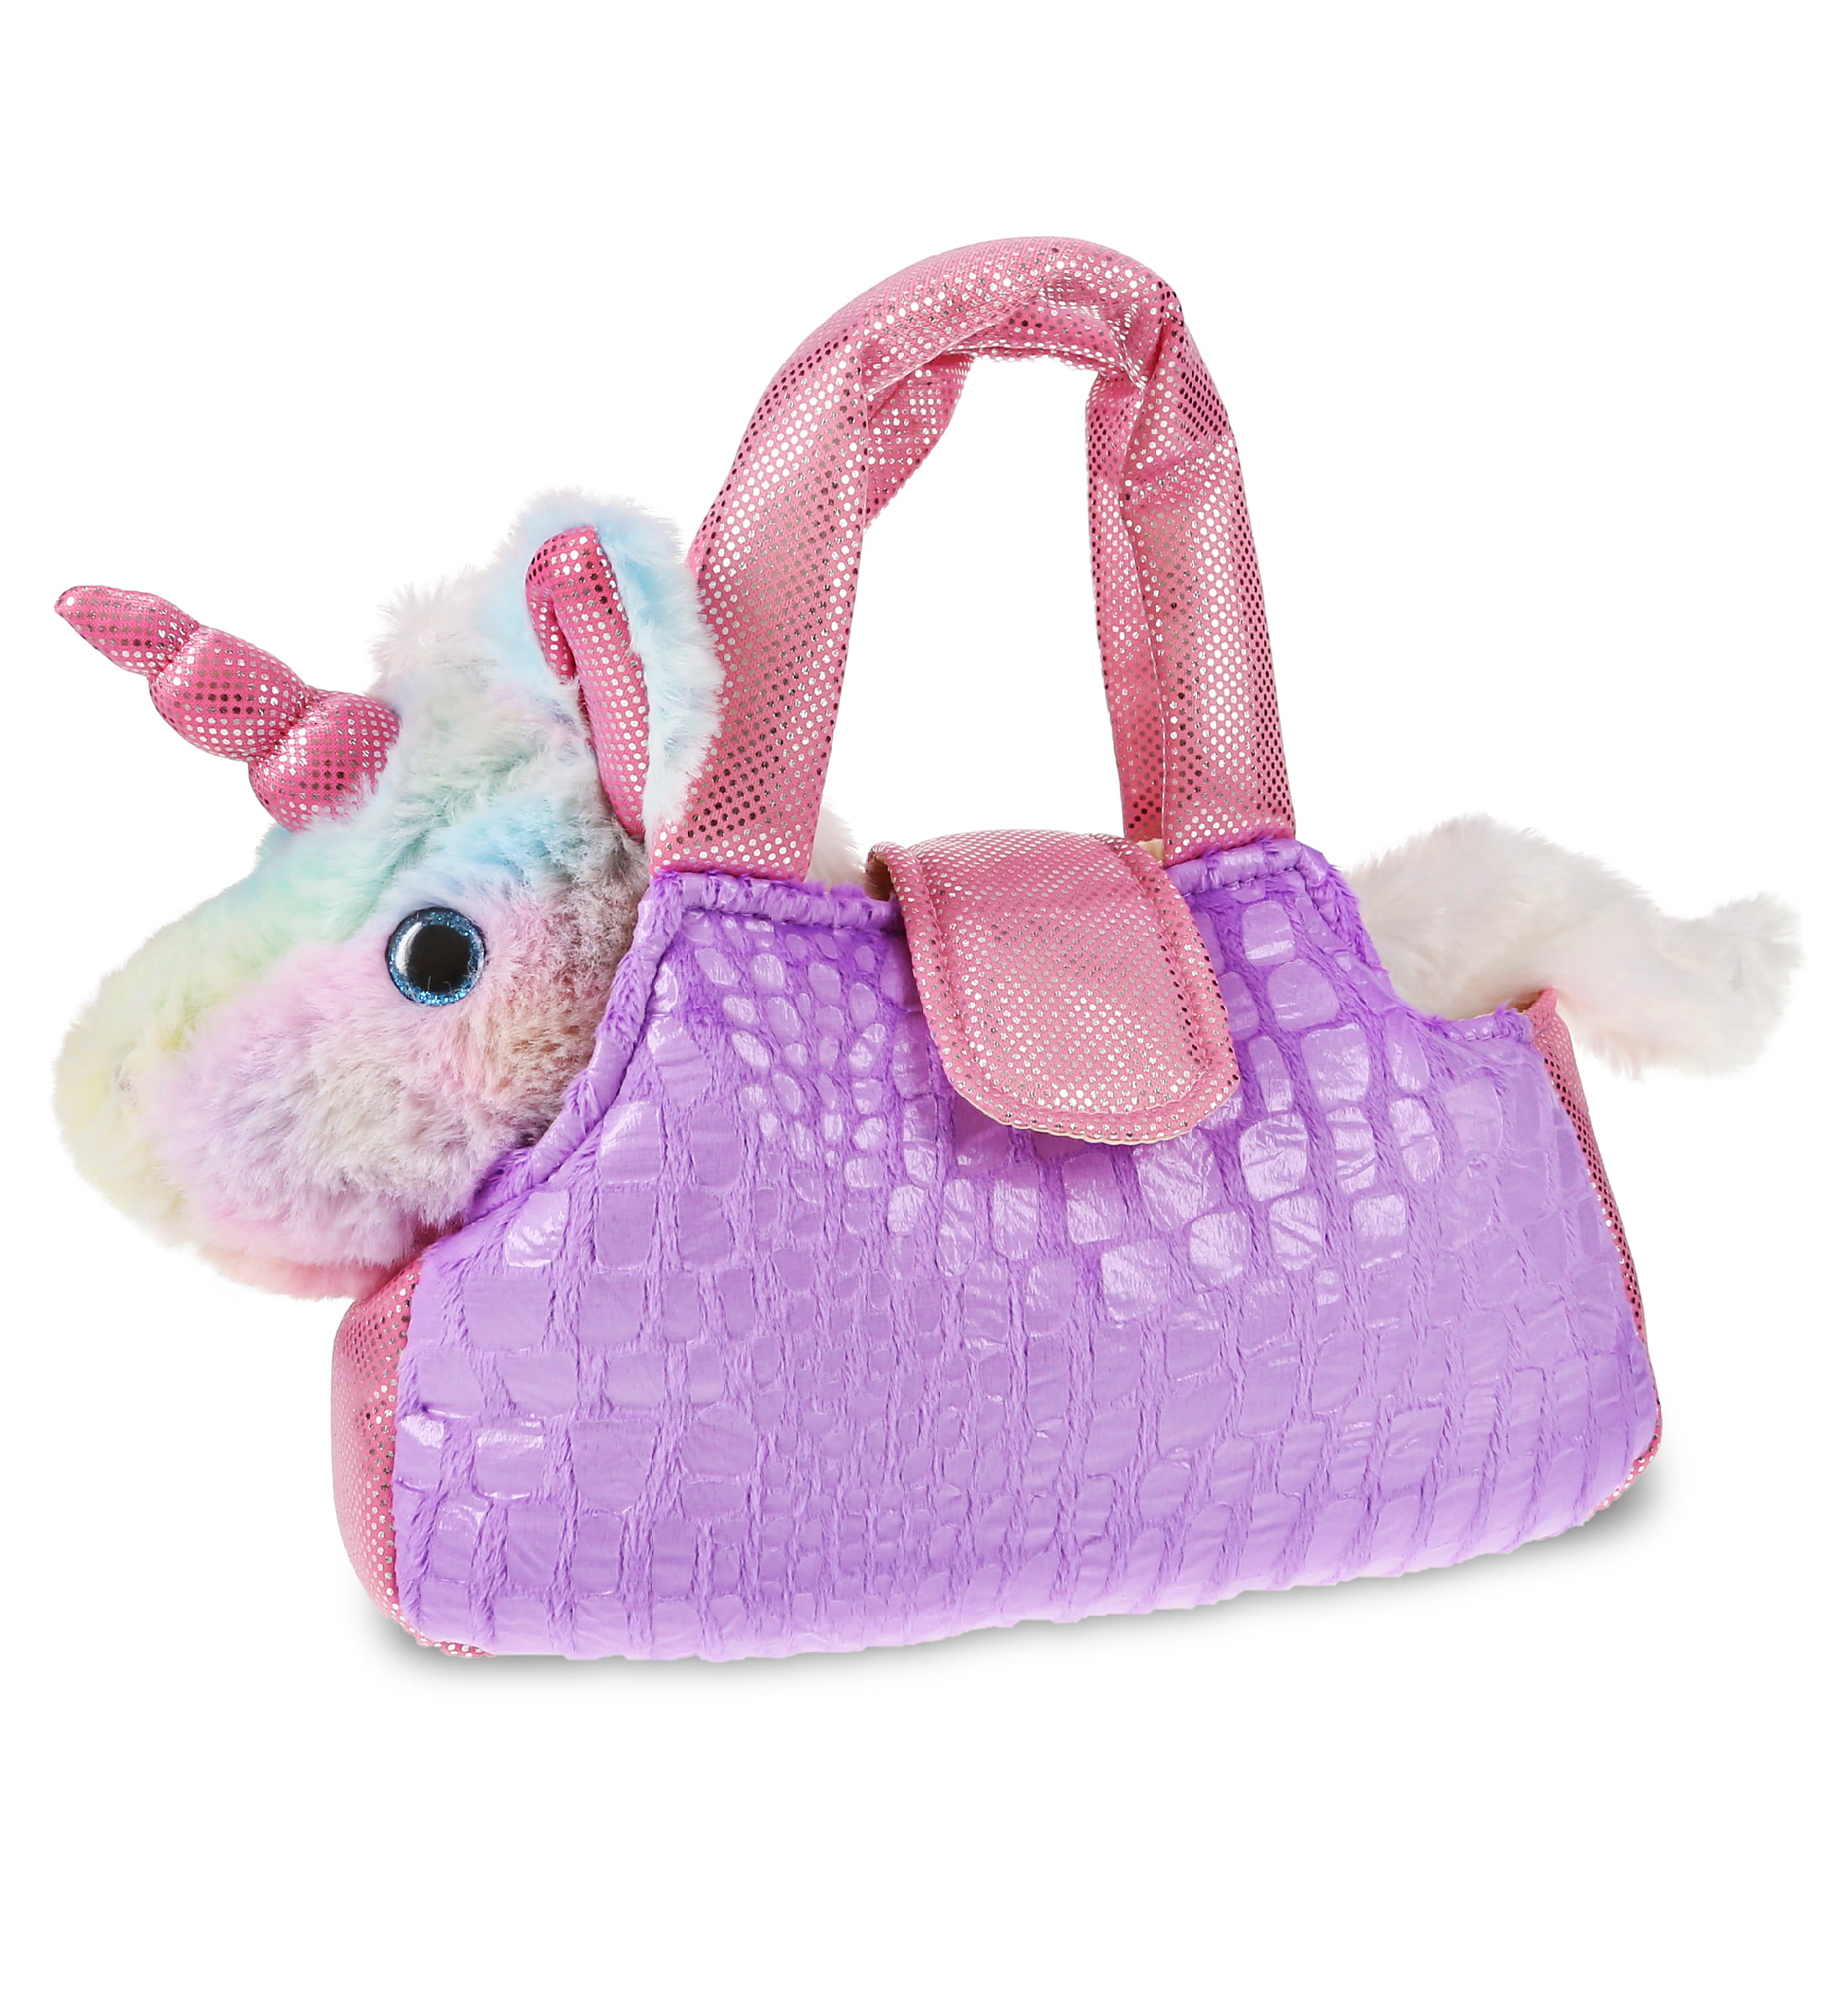 Unboxing my Unicorn Bag! 🦄🦄 The Louis Vuitton Multicolor Trouville 🌈 